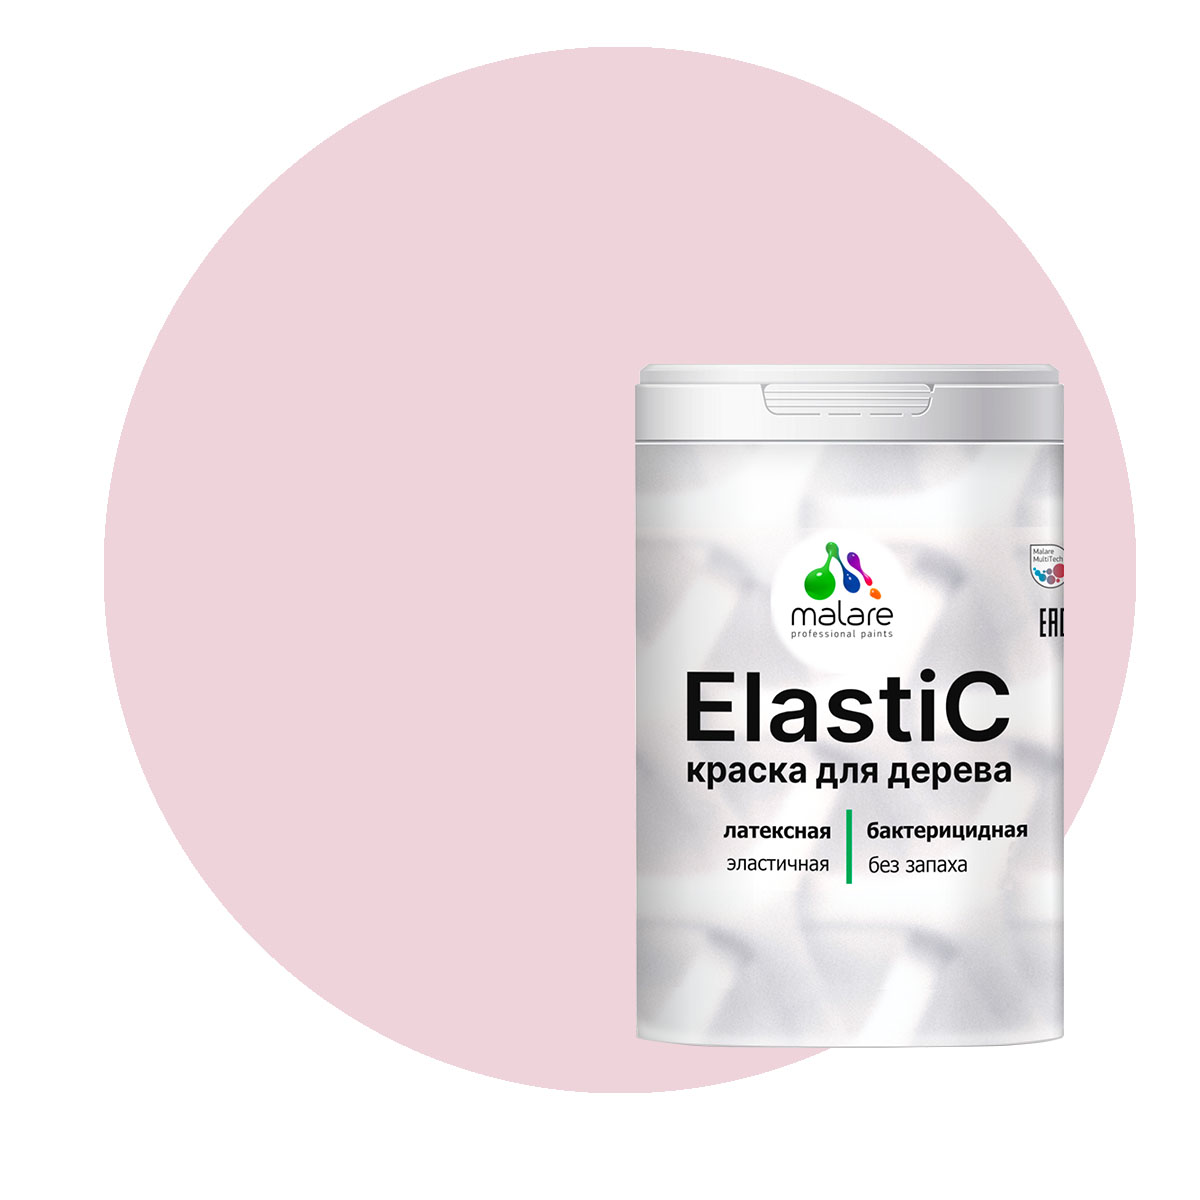 Краска Malare Elastic для деревянных поверхностей, бледно-розовый, 2 кг. краска malare для окон и дверей деревянных поверхностей бледно розовый 1 кг